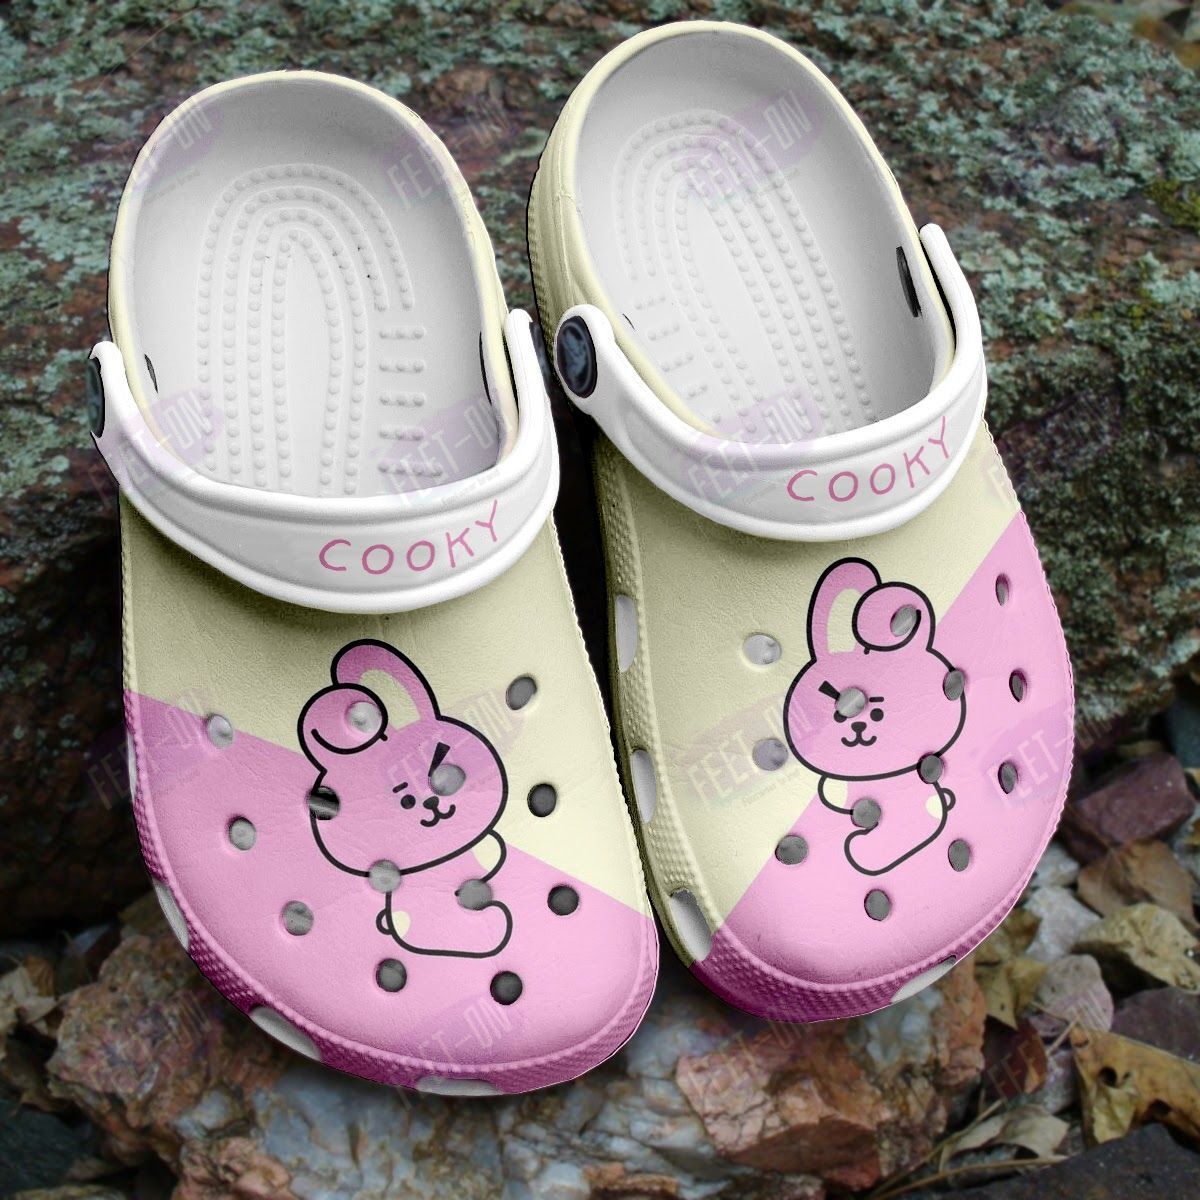 BEST Cooky BT21 BTS pink khaki crocs crocband Shoes